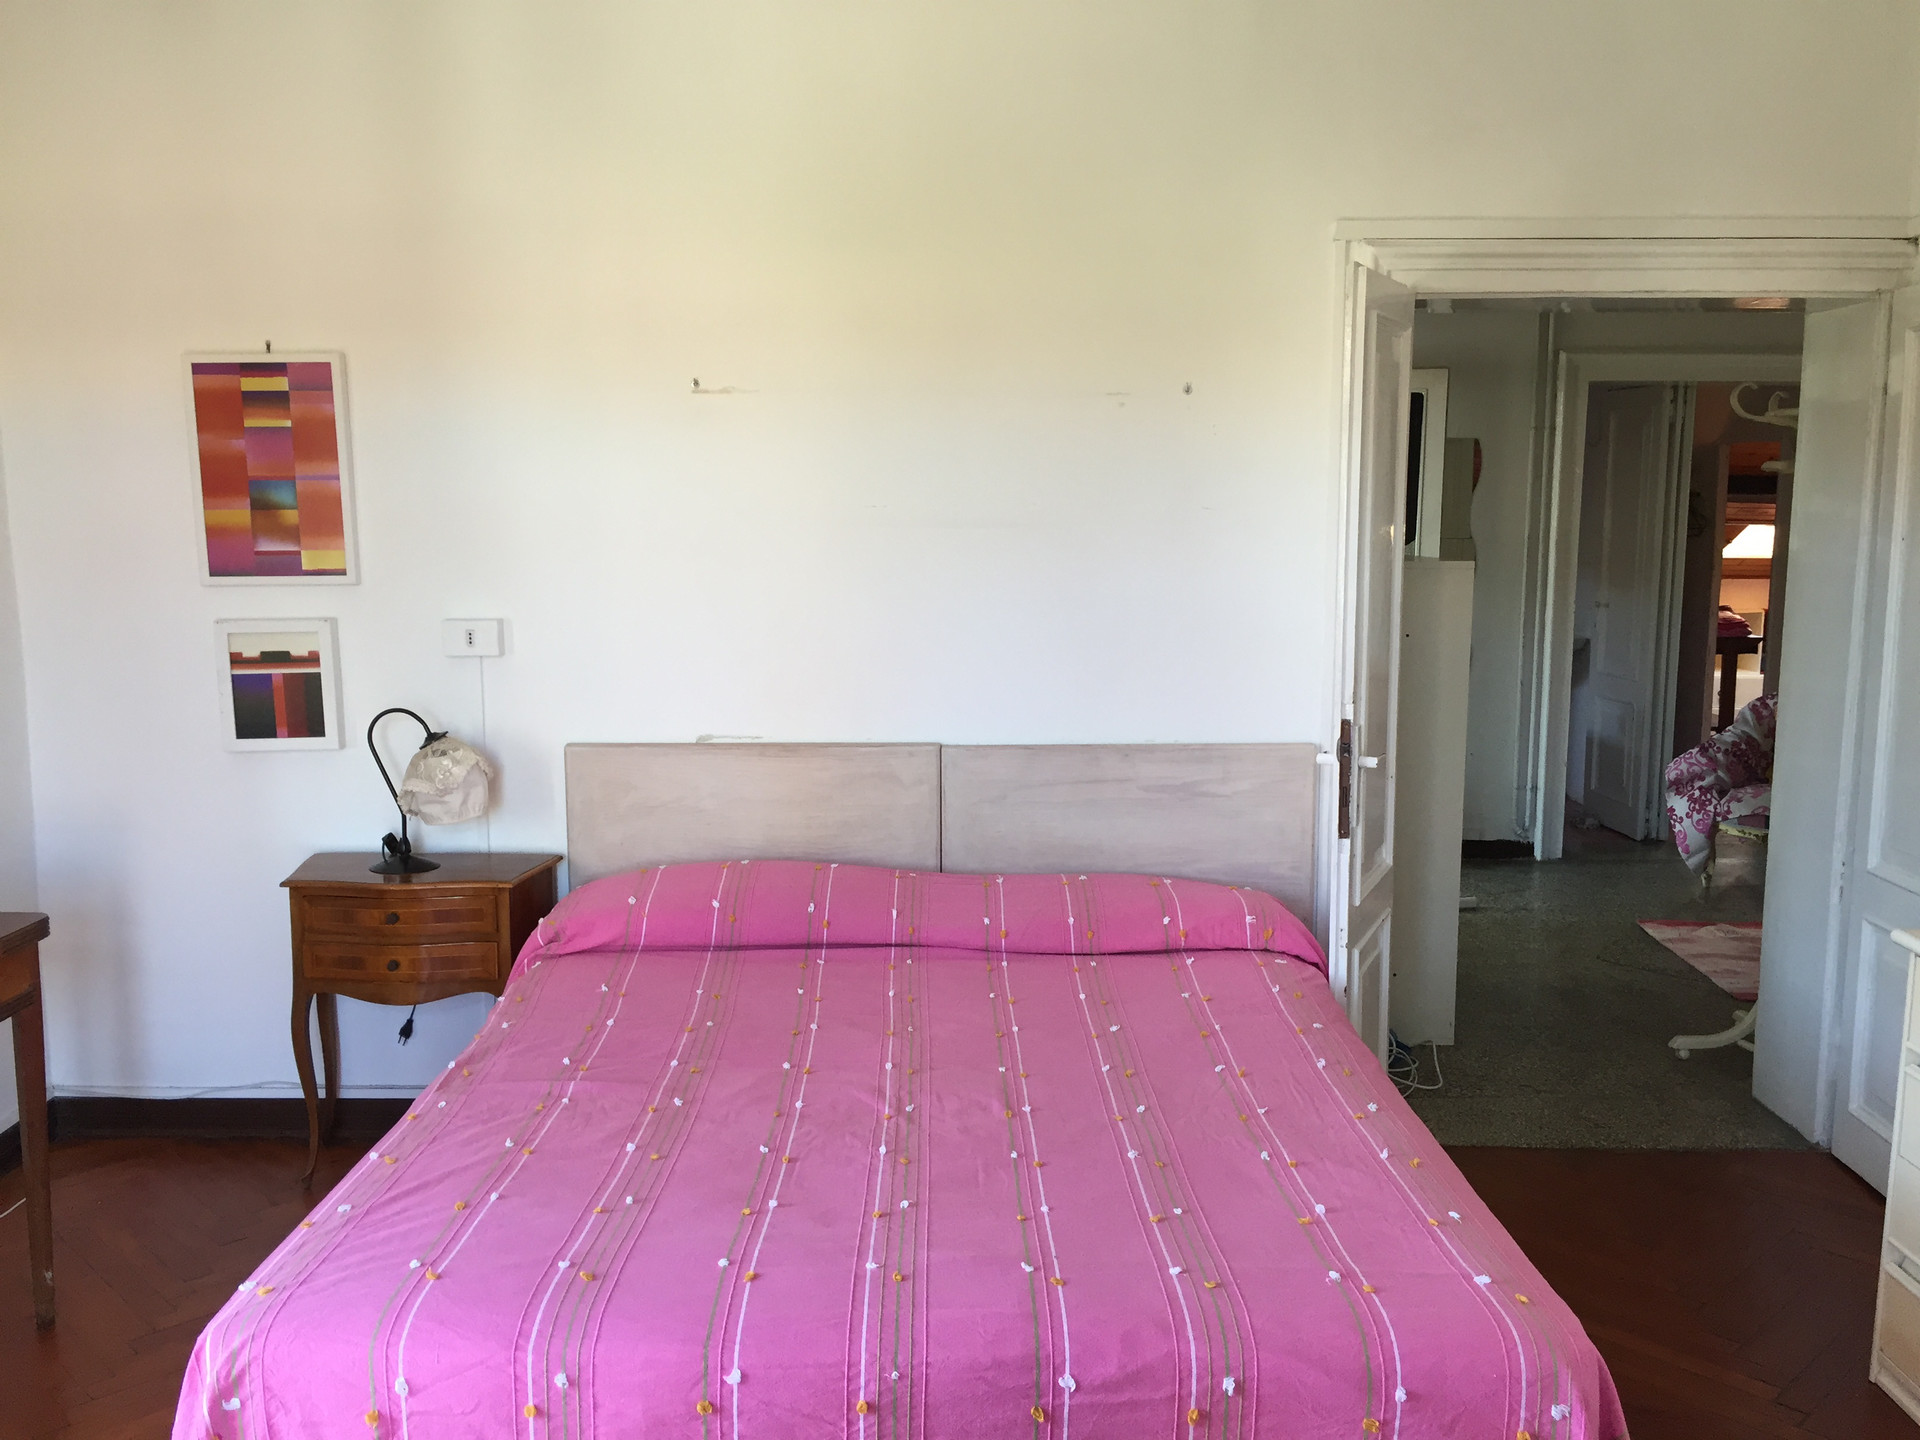 bedroom rent in Lido of Venice | Room for rent Venice